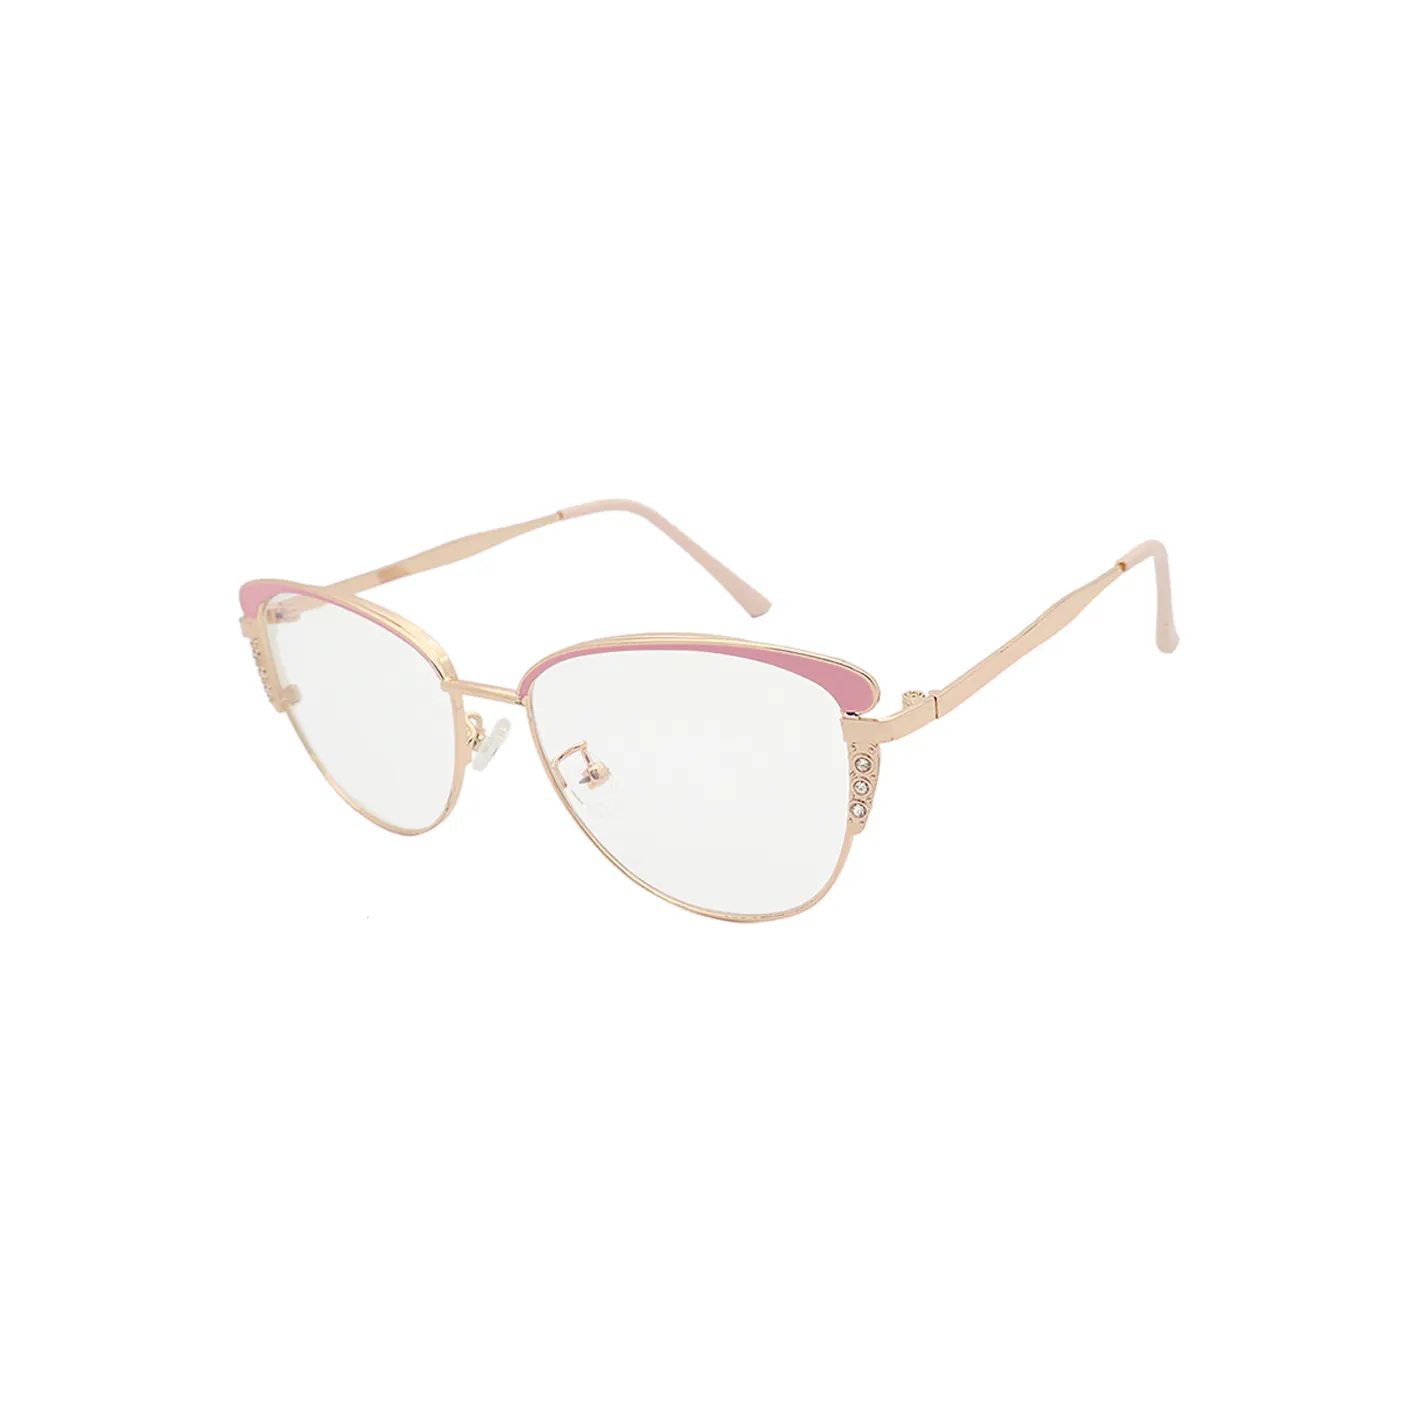 Vendita calda in acciaio inox occhiali da vista cornici oro rosa doppi colori Logo personalizzato per signora in metallo occhiali di moda